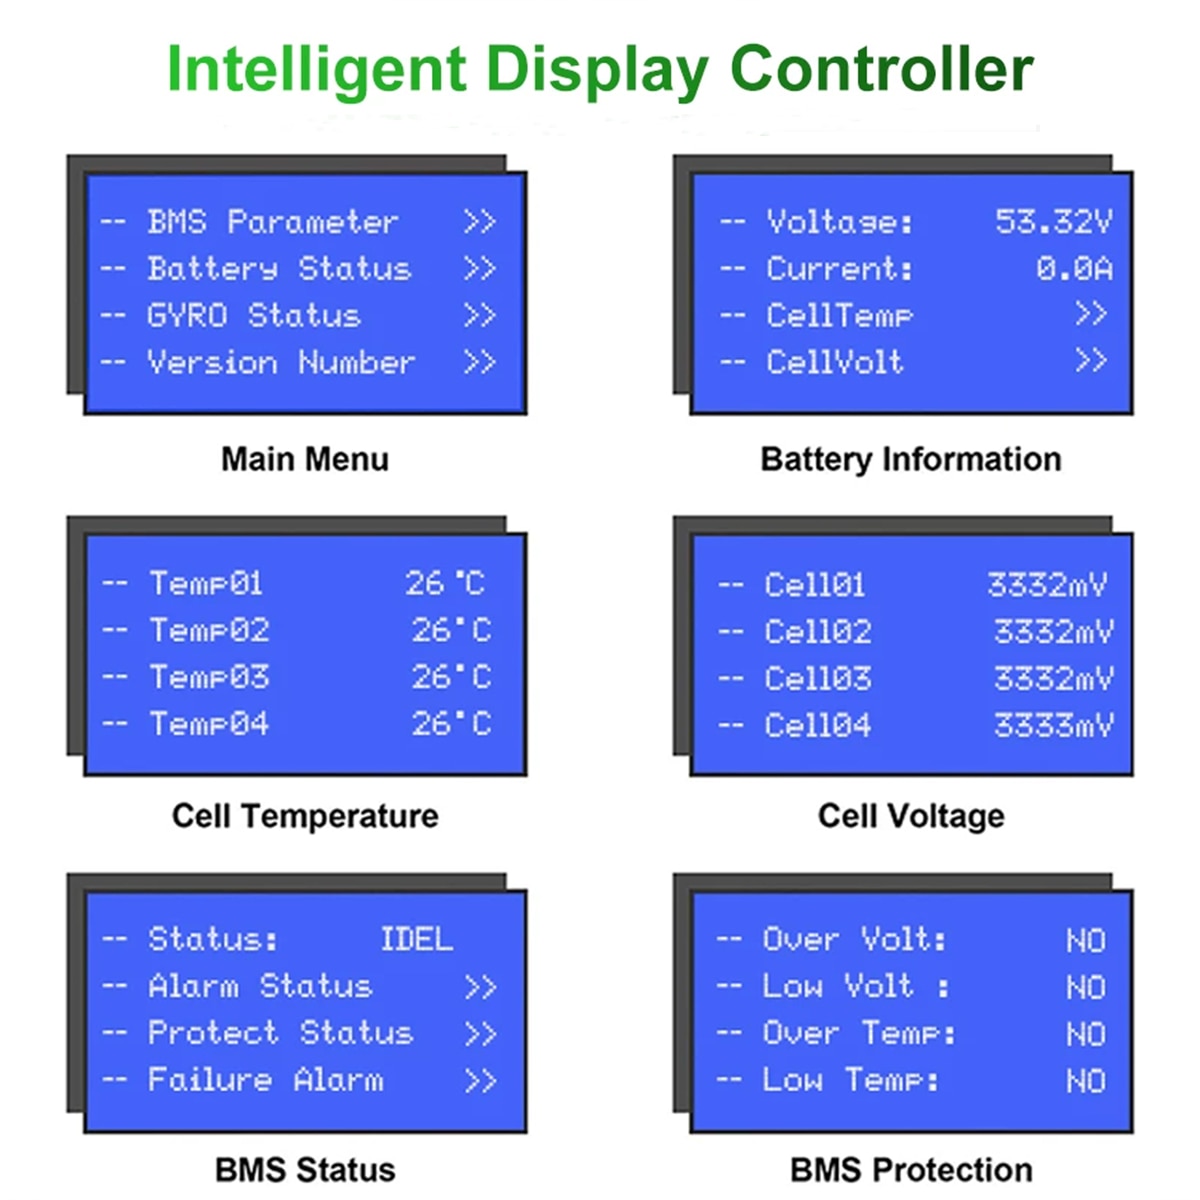 Intelligent Display Controller BNS Porometer Voltoge: 53.32